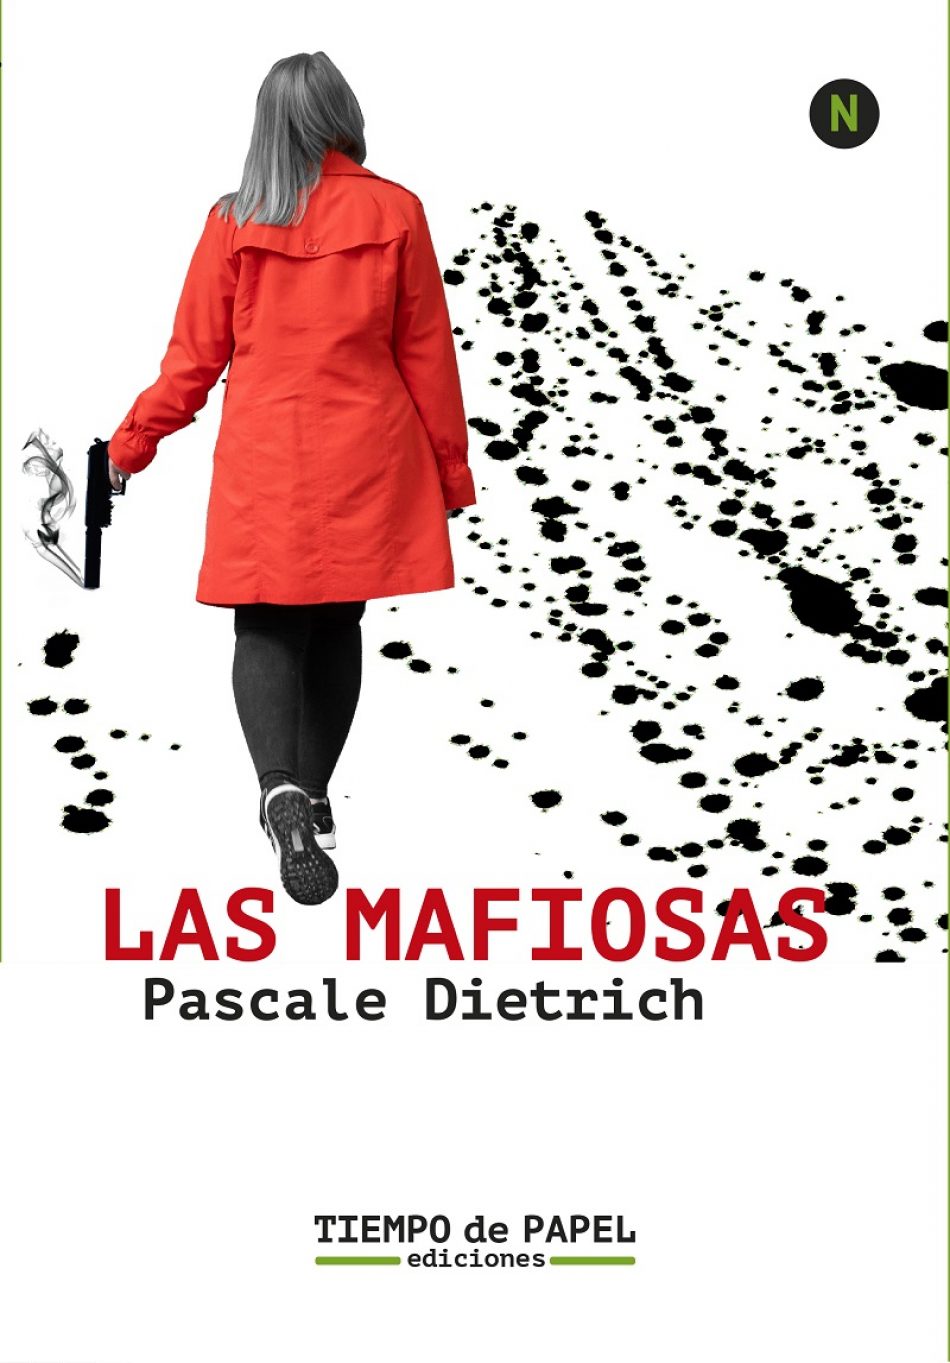 Entrevista con Pascale Dietrich, autora de “Las mafiosas”: “La mafia es ultraliberalismo llevado al extremo”